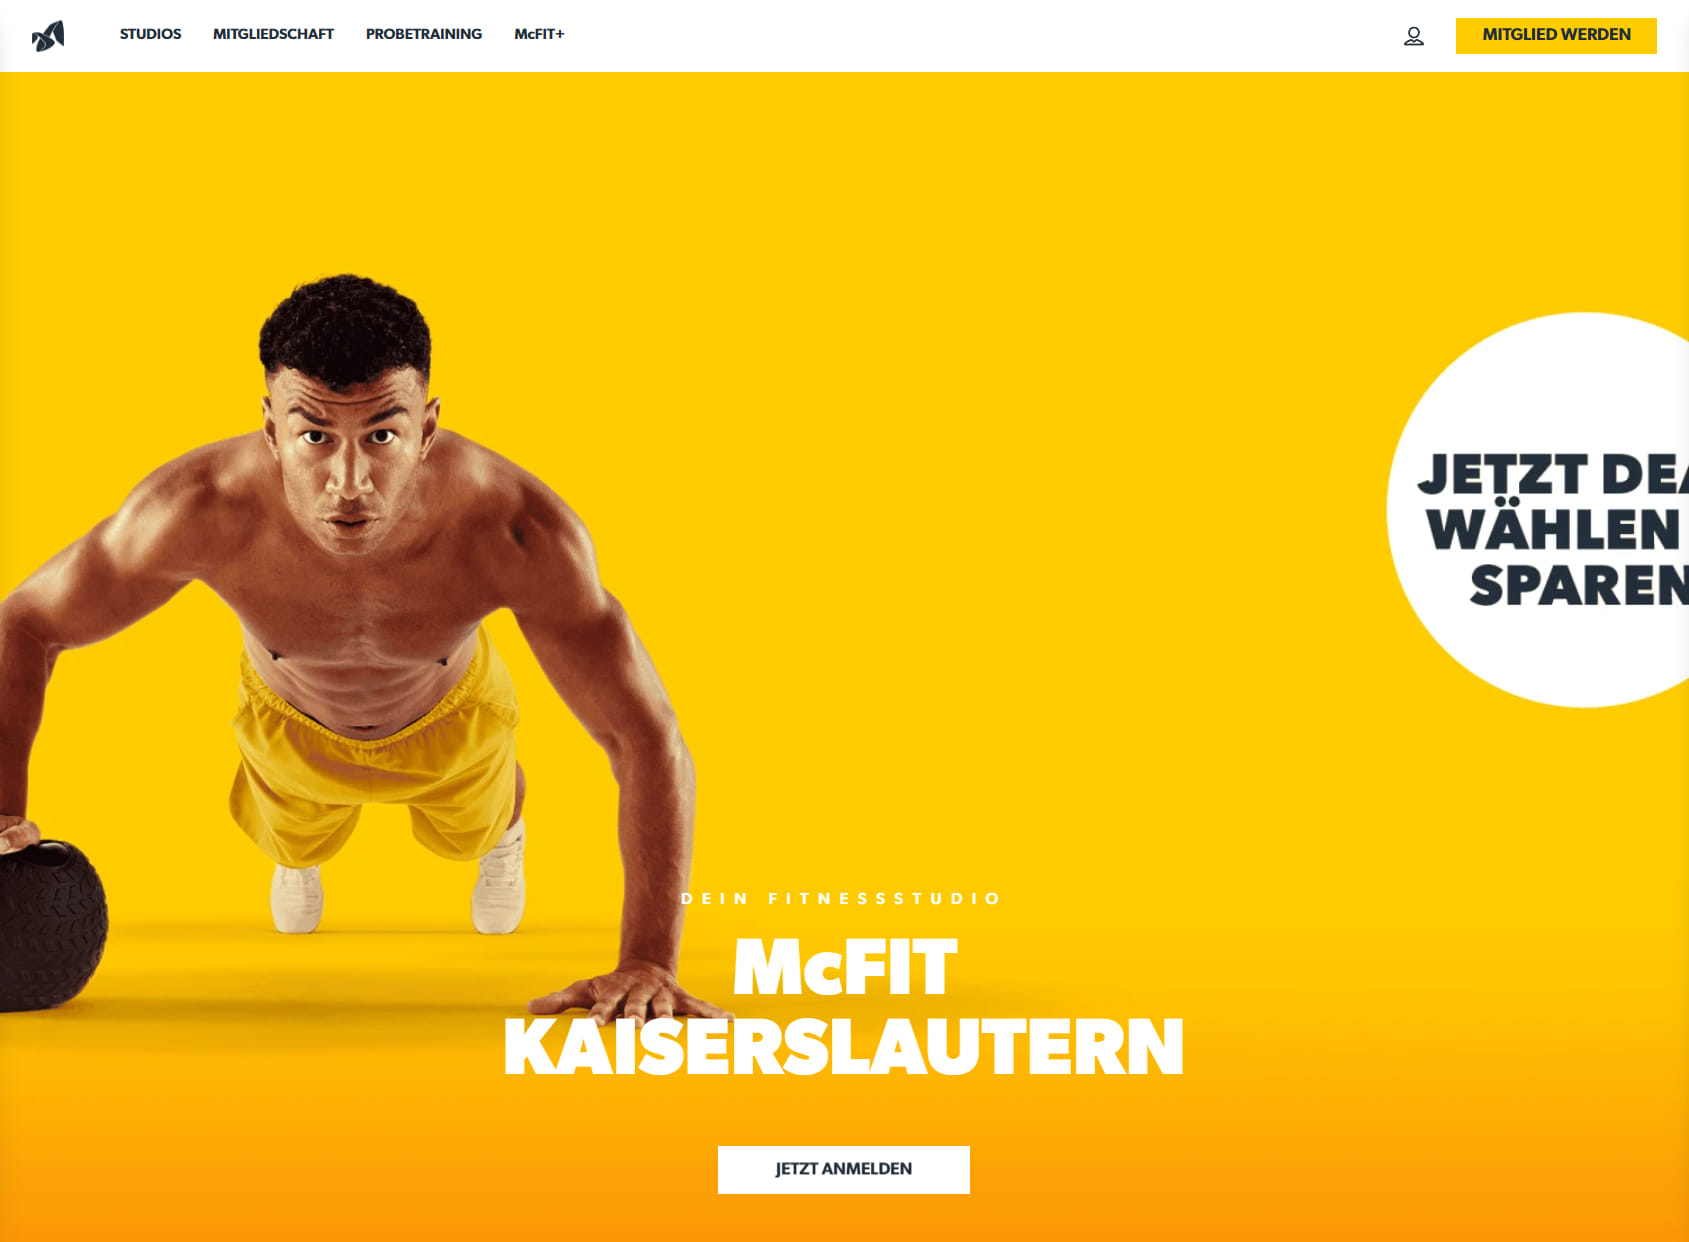 McFit gym Kaiserslautern